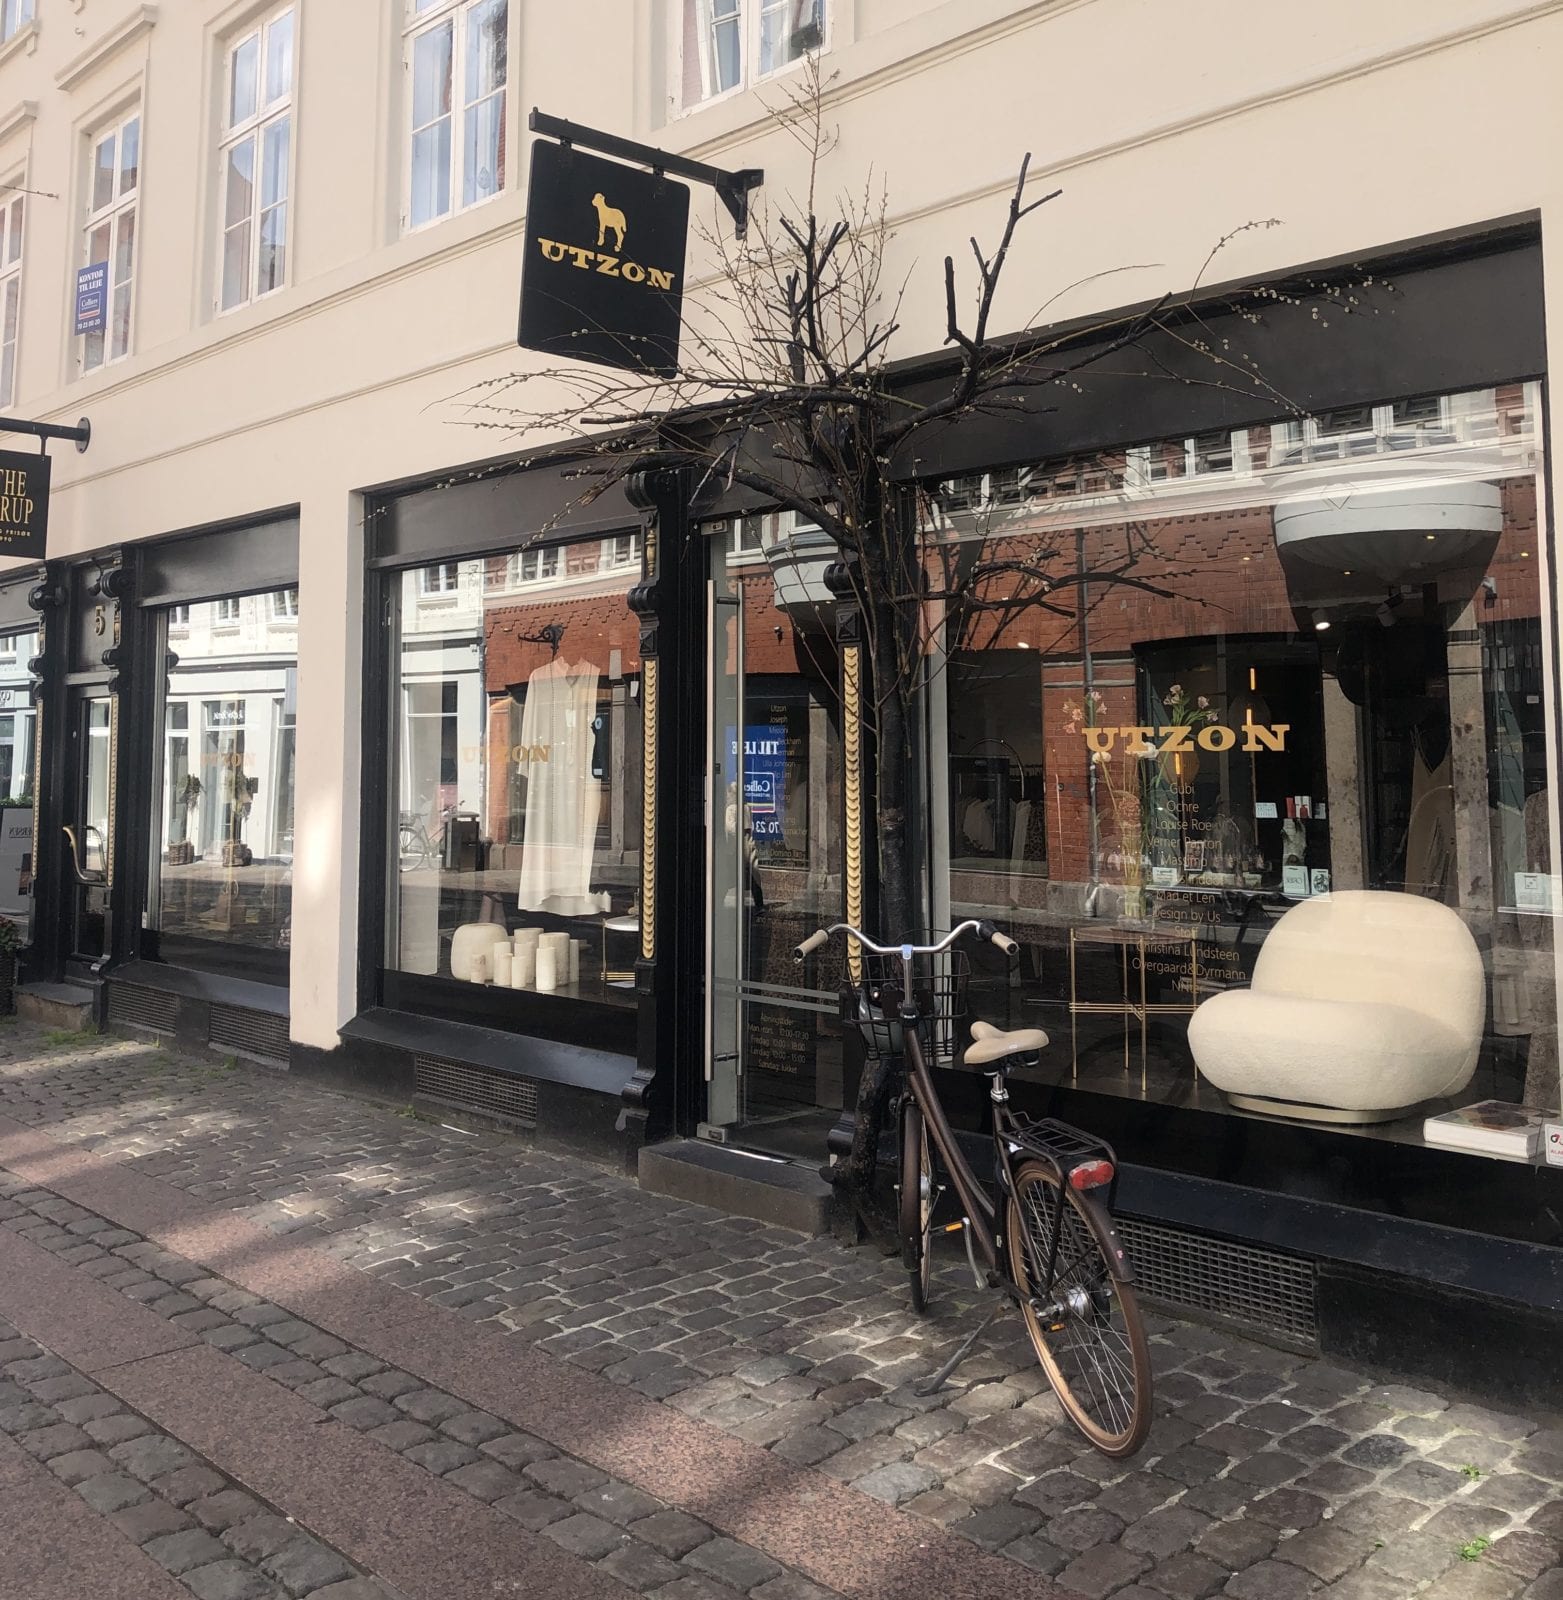 Utzon Boutique in Aarhus Denmark